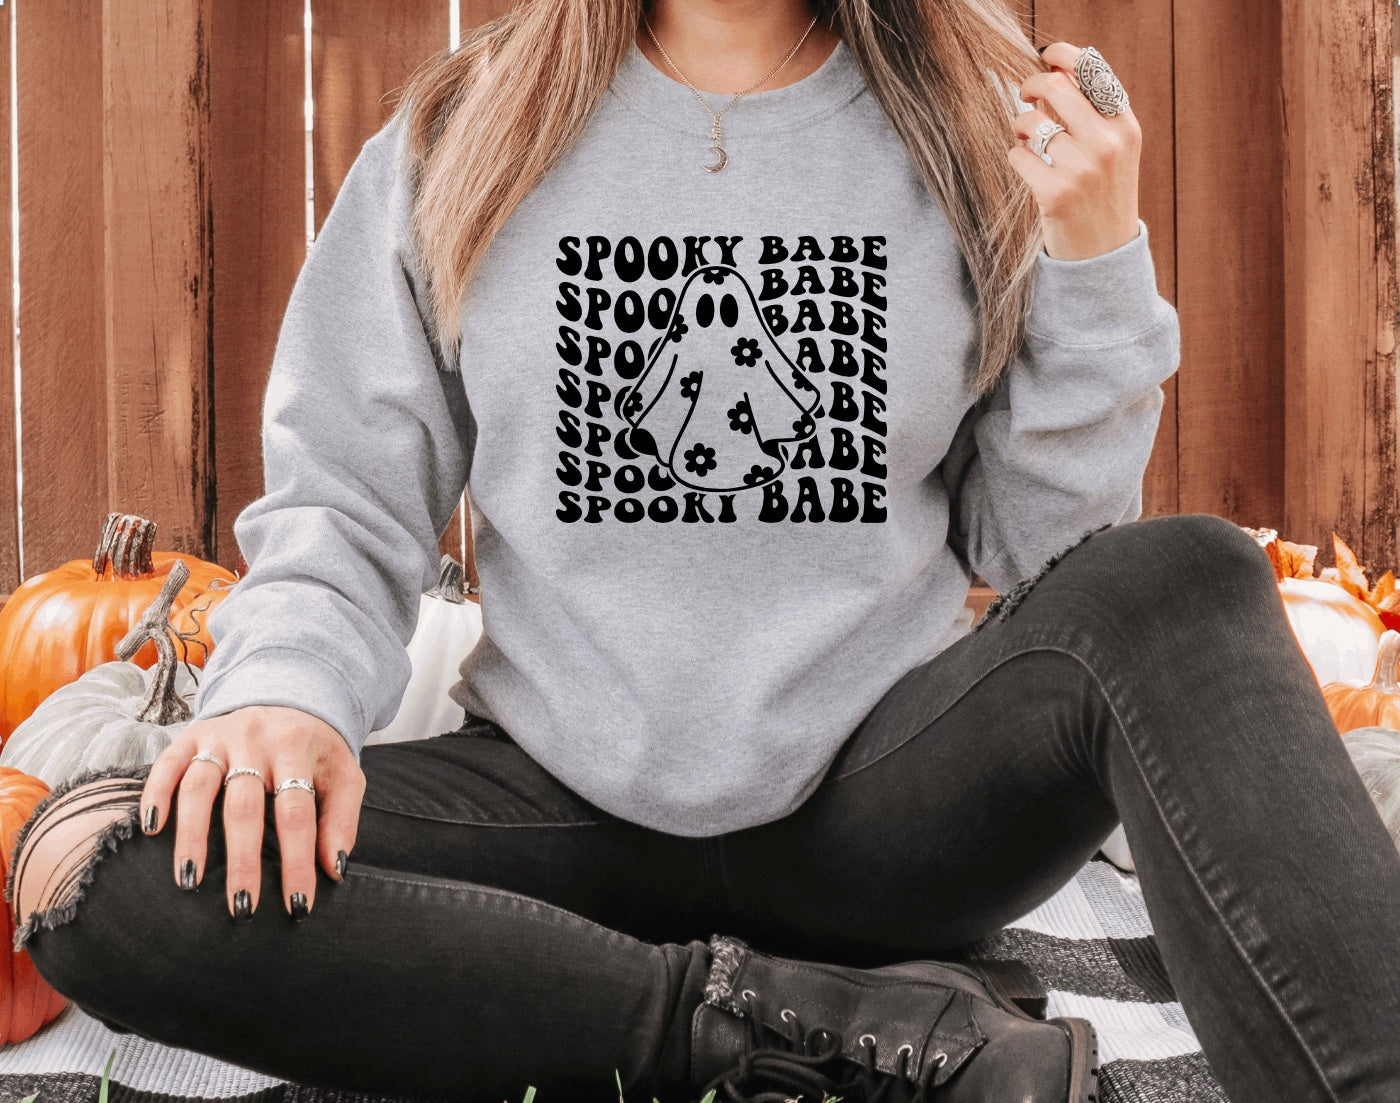 Spooky babe crewneck sweatshirt 